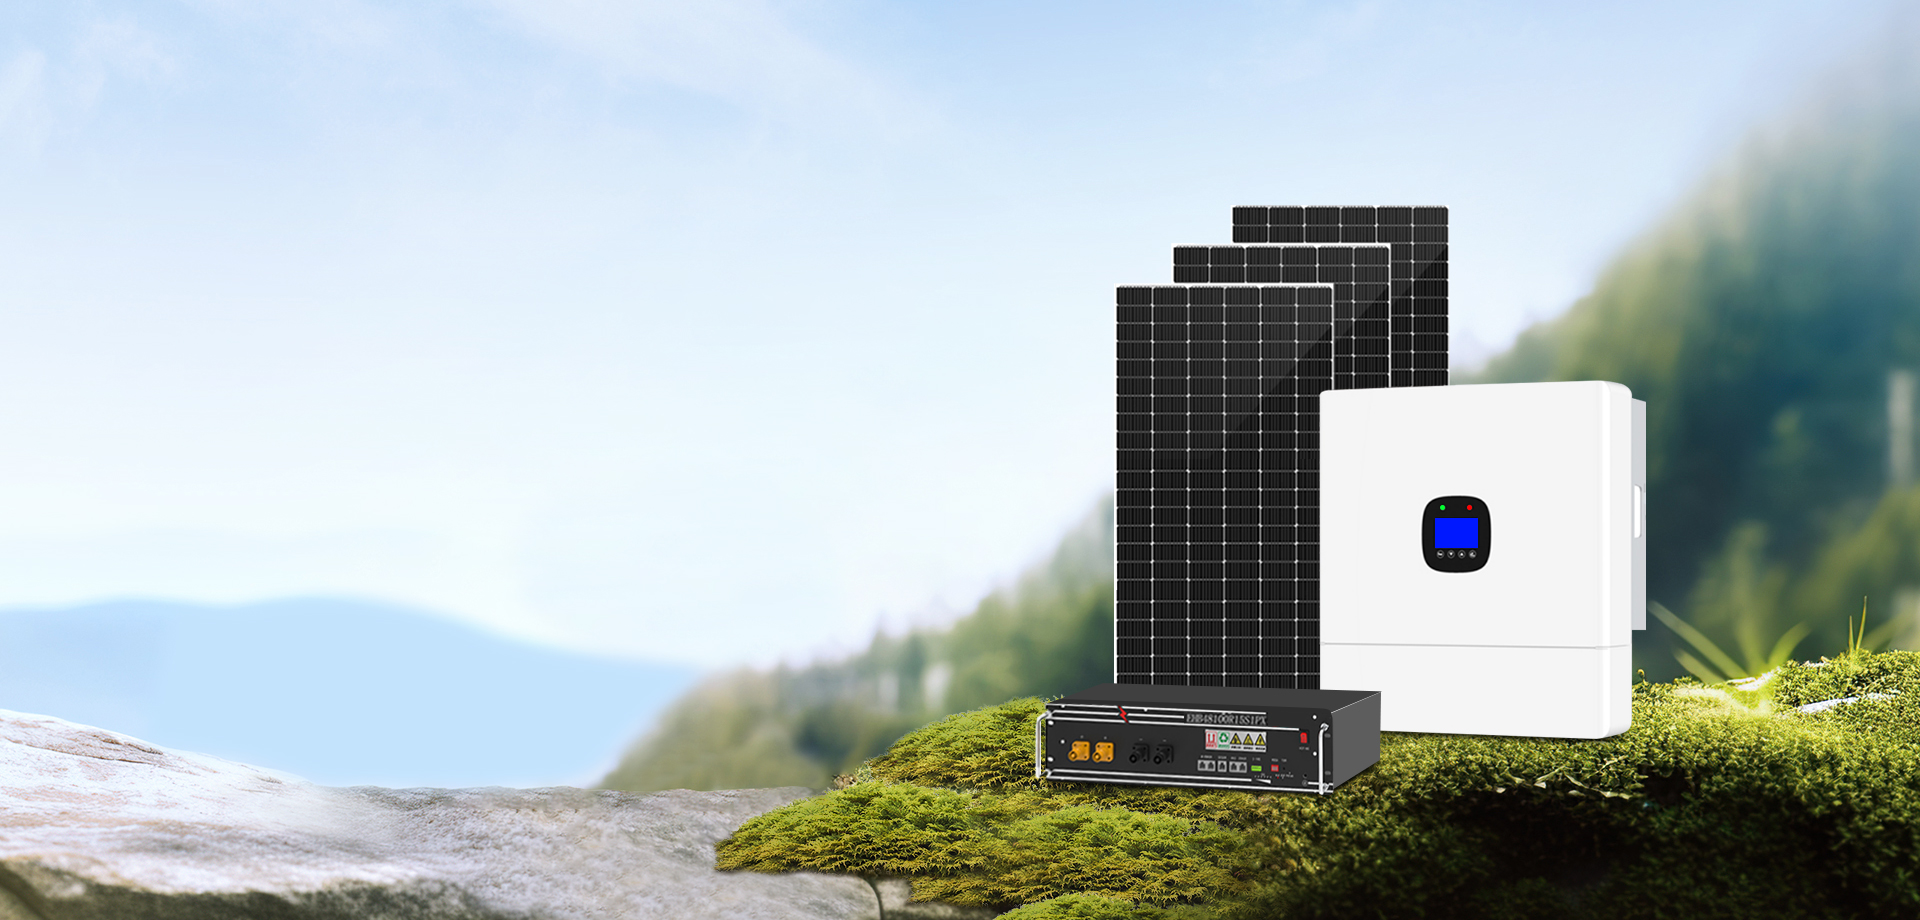 التكنولوجيا العالية 
منتجات الطاقة الشمسية
